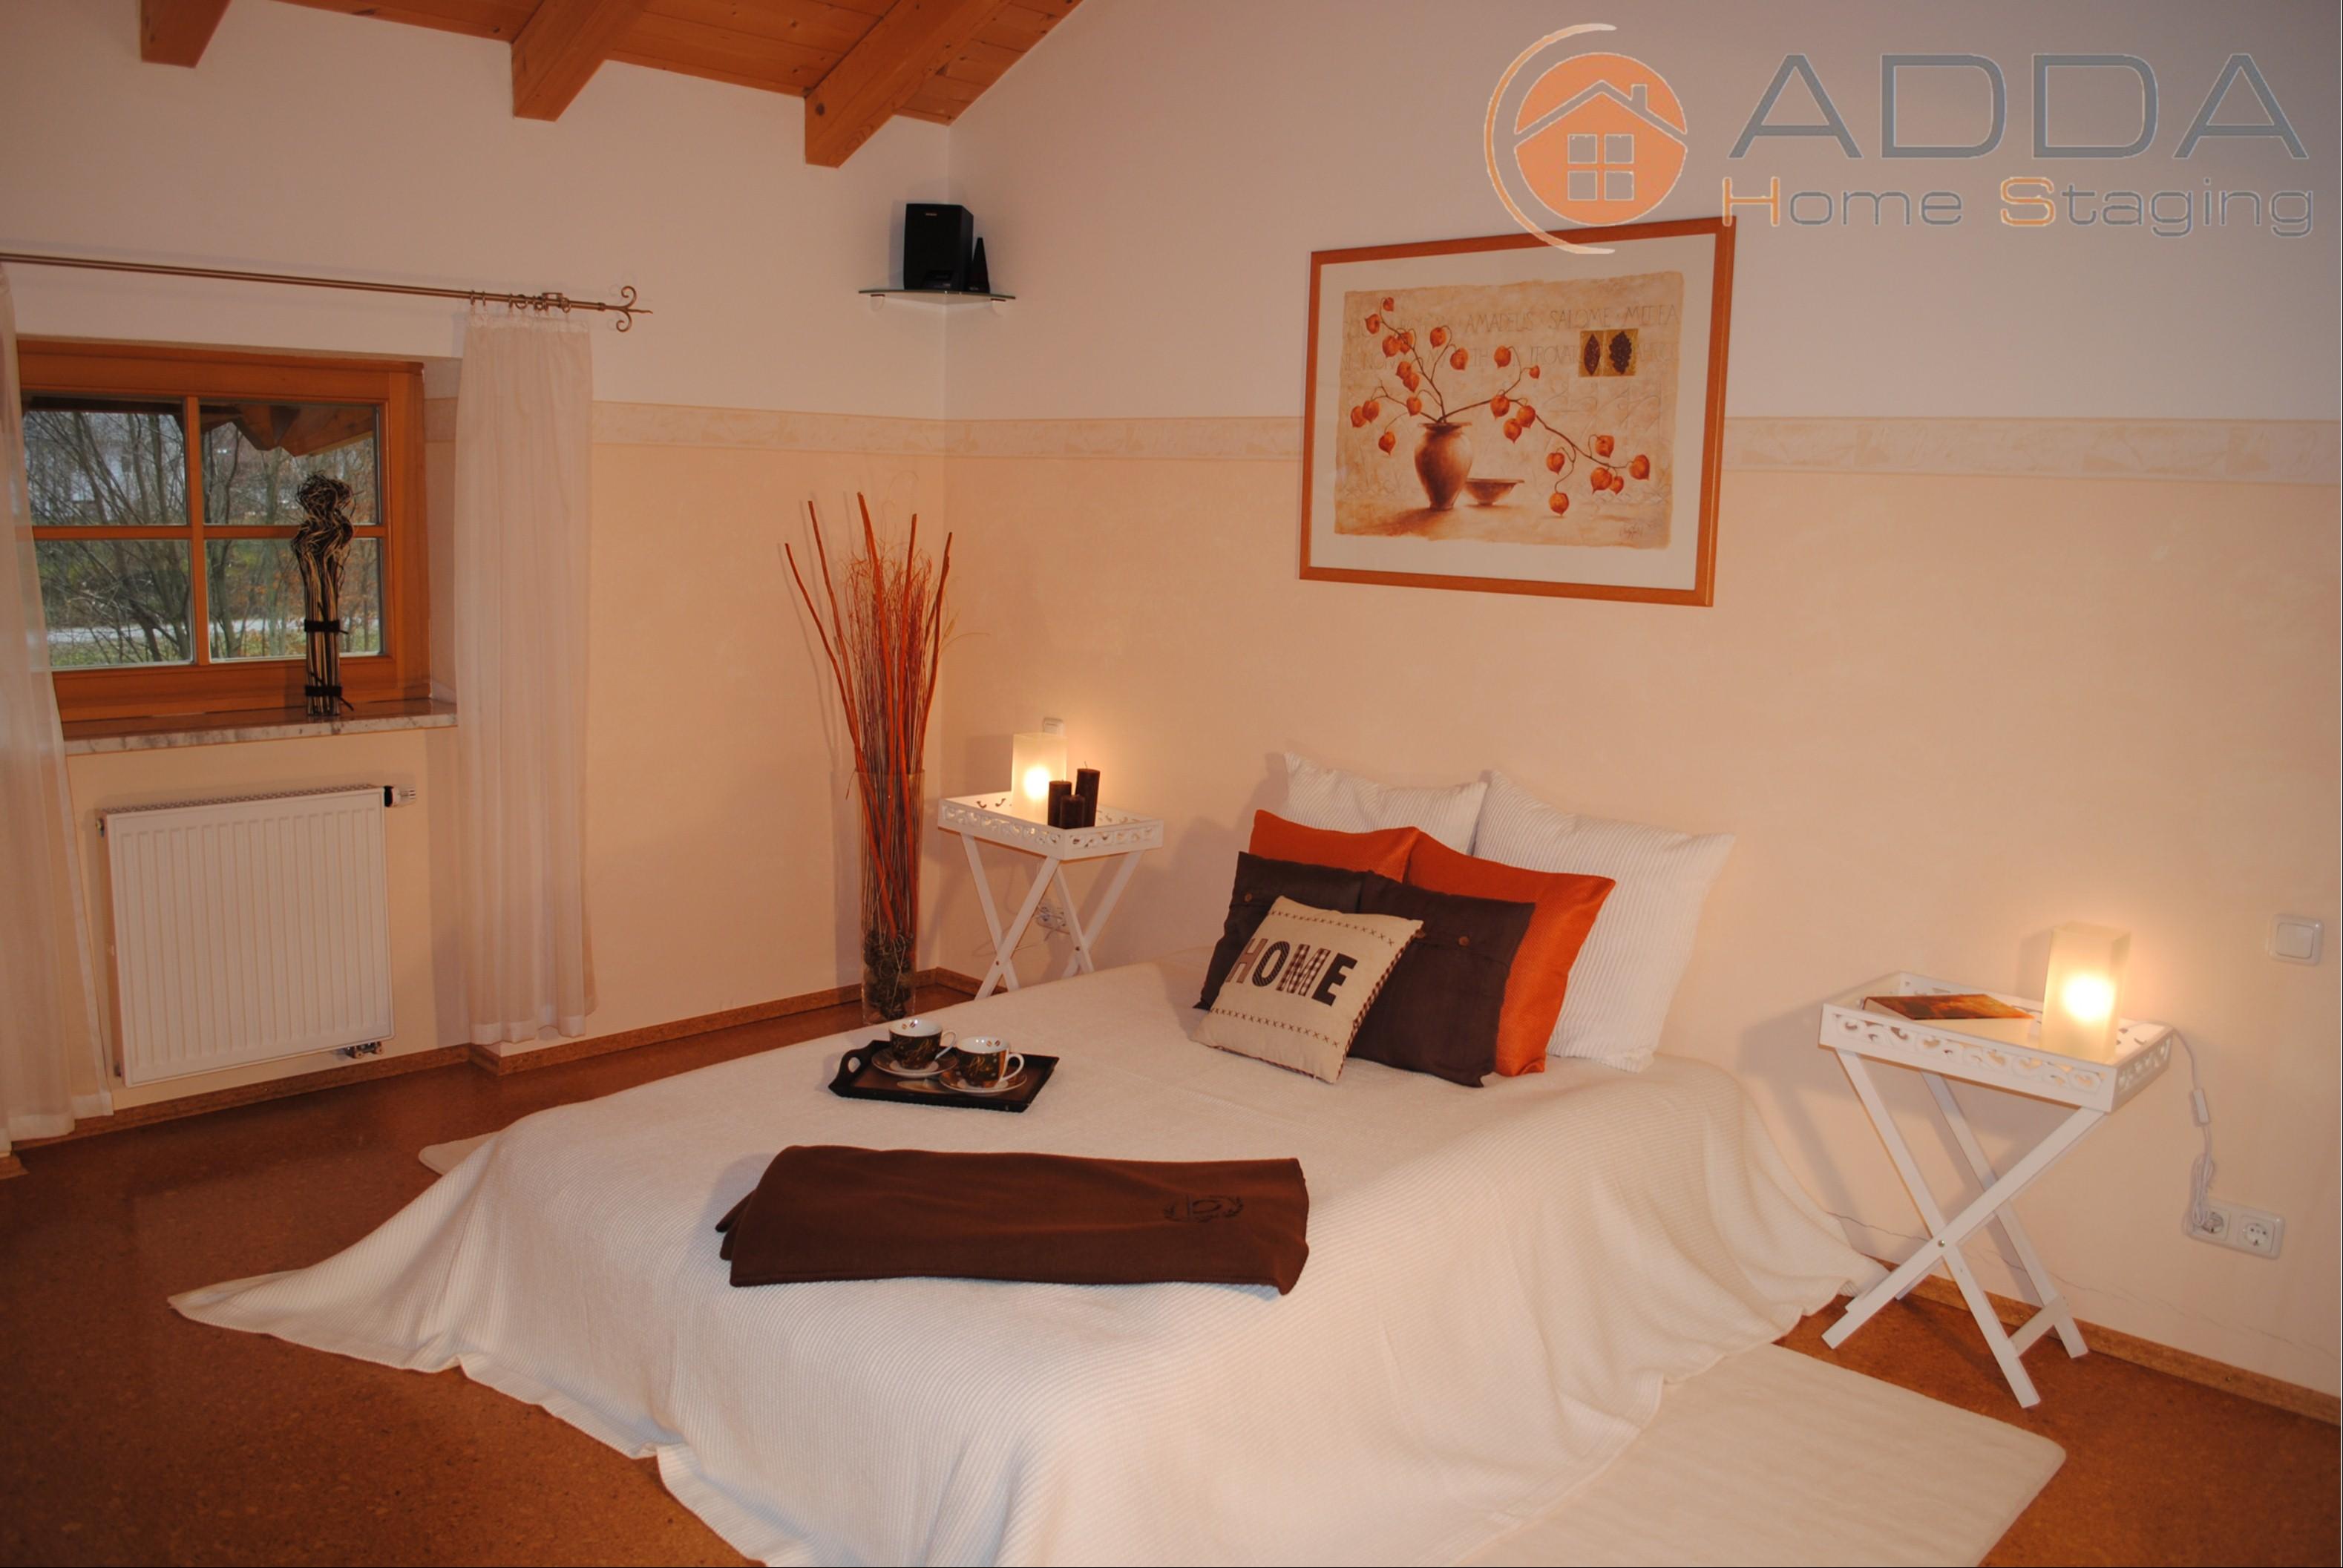 Schlafzimmer nach dem Home Staging #bilderrahmen #landhausstil #hotelzimmer ©ADDA Home Staging